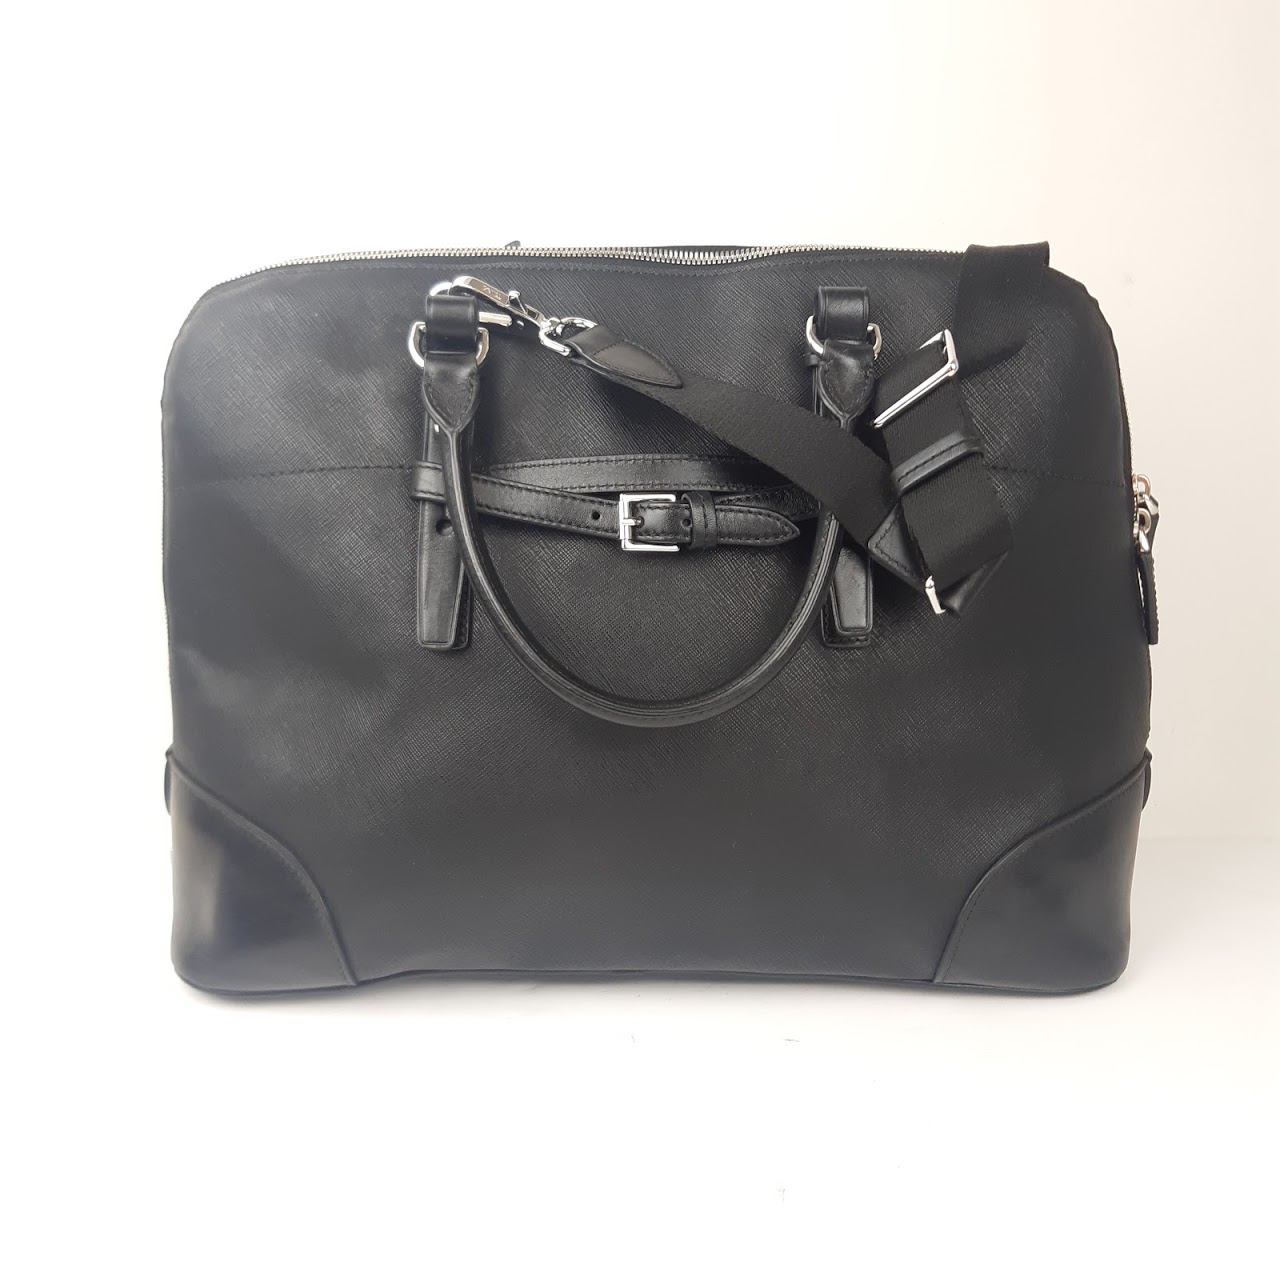 Tumi Saffiano Leather Laptop Bag